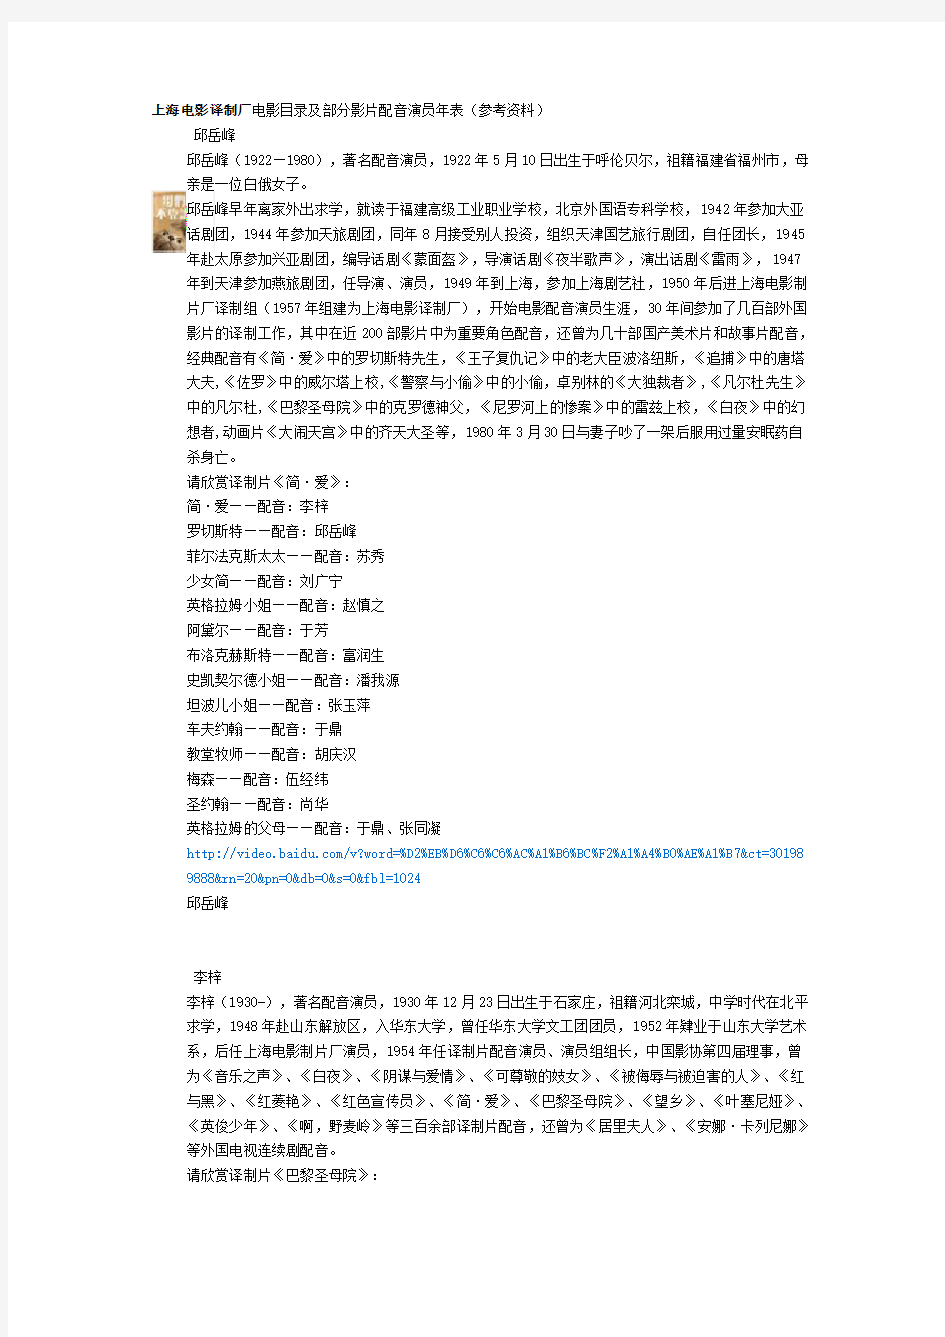 上海电影译制厂电影目录及部分影片配音演员年表